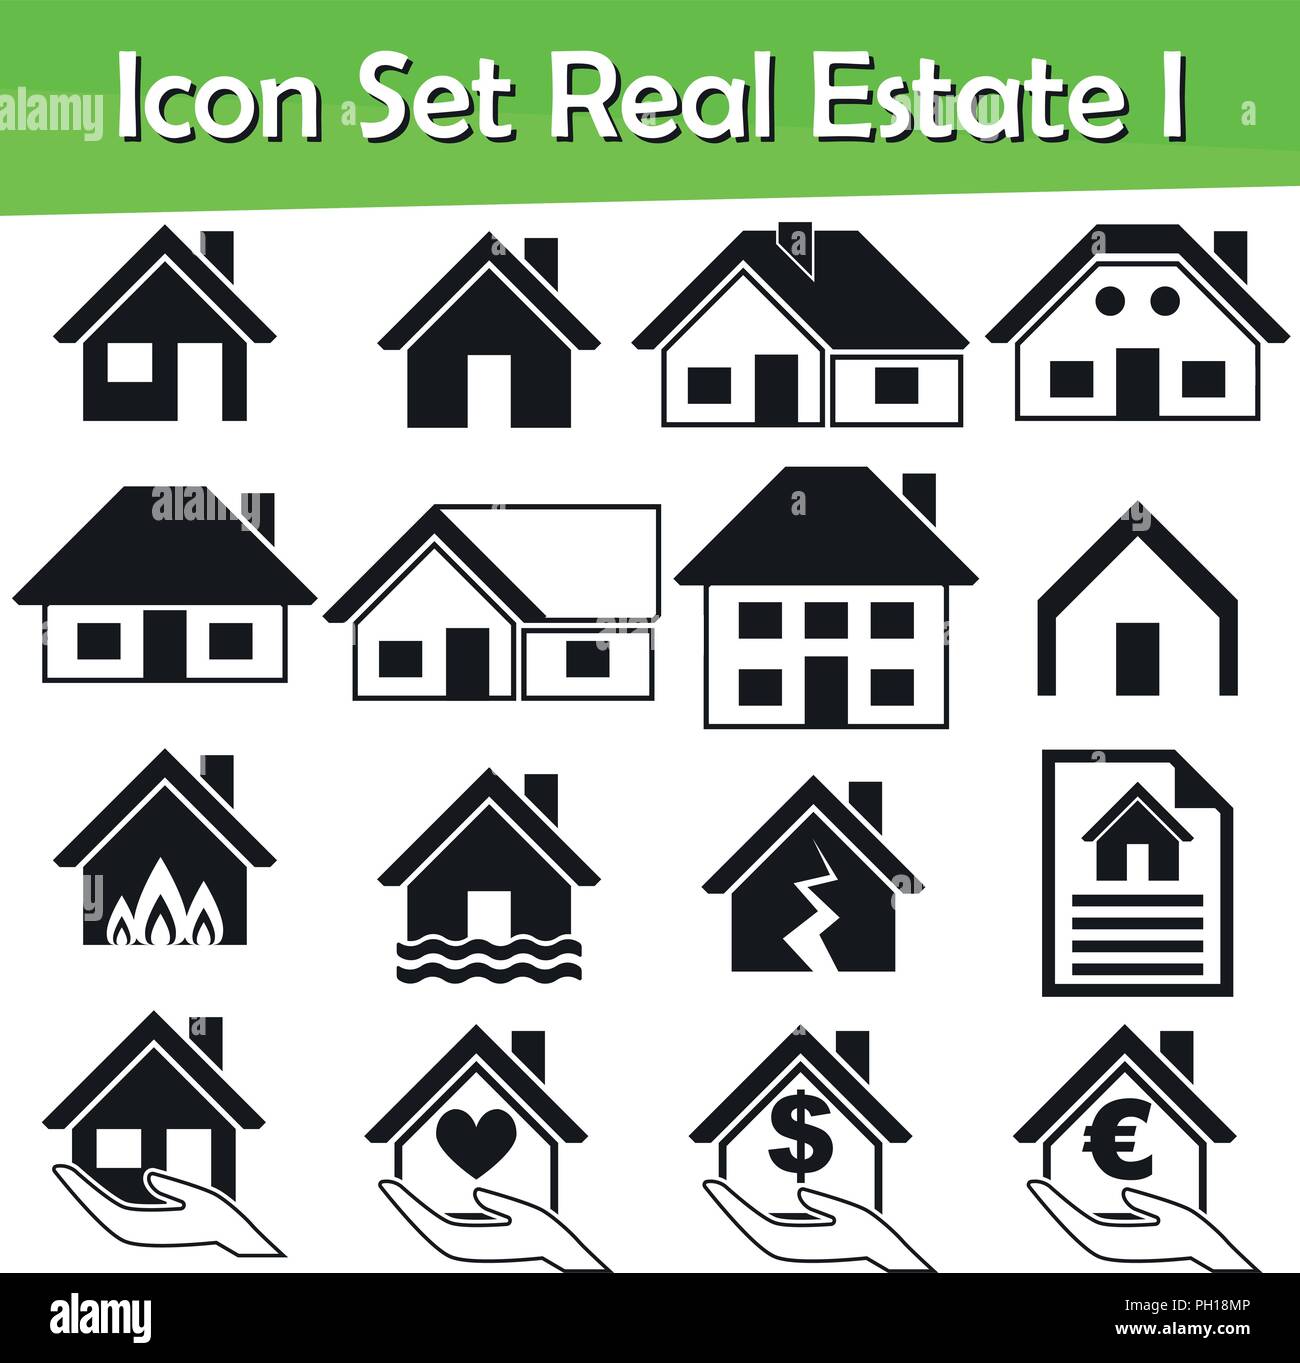 Icon Set Immobilien ich mit 16 Icons für den kreativen Einsatz in Grafik Design Stock Vektor